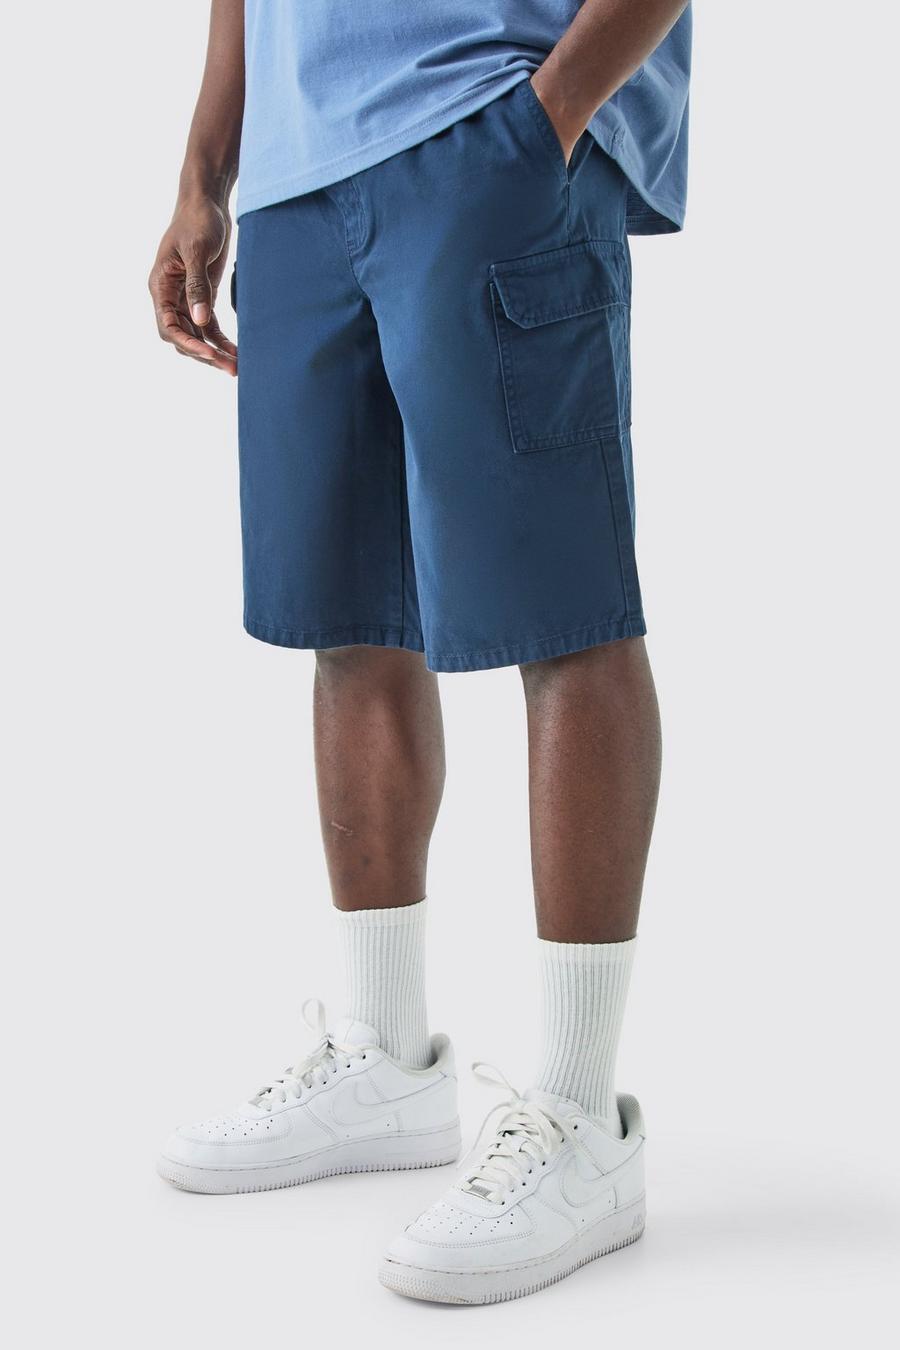 Pantalón corto holgado cargo largo, Navy